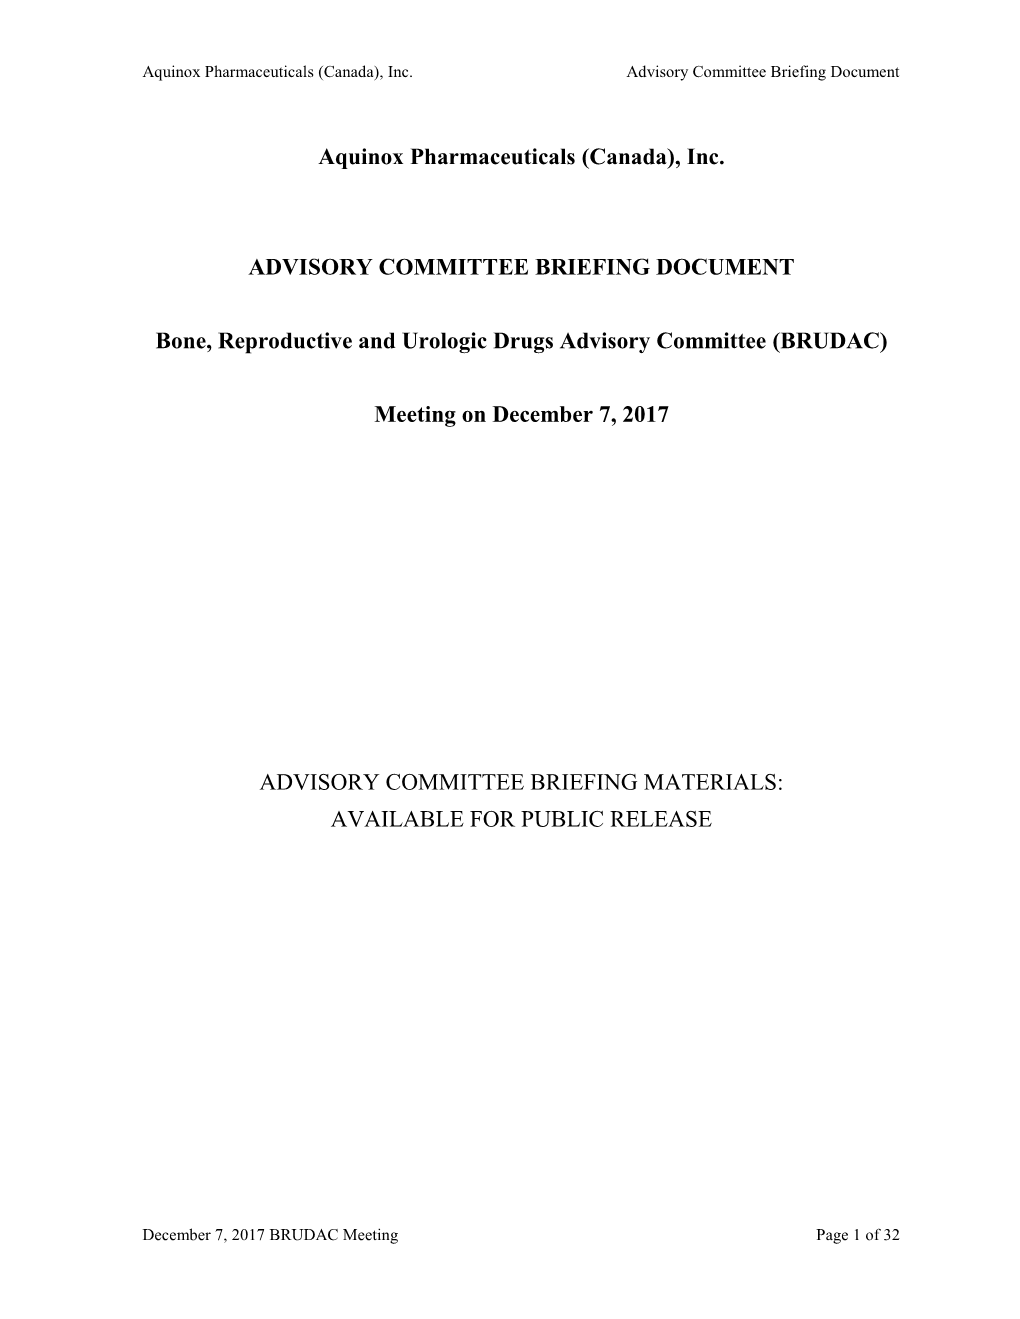 Aquinox Pharmaceuticals (Canada), Inc. Advisory Committee Briefing Document